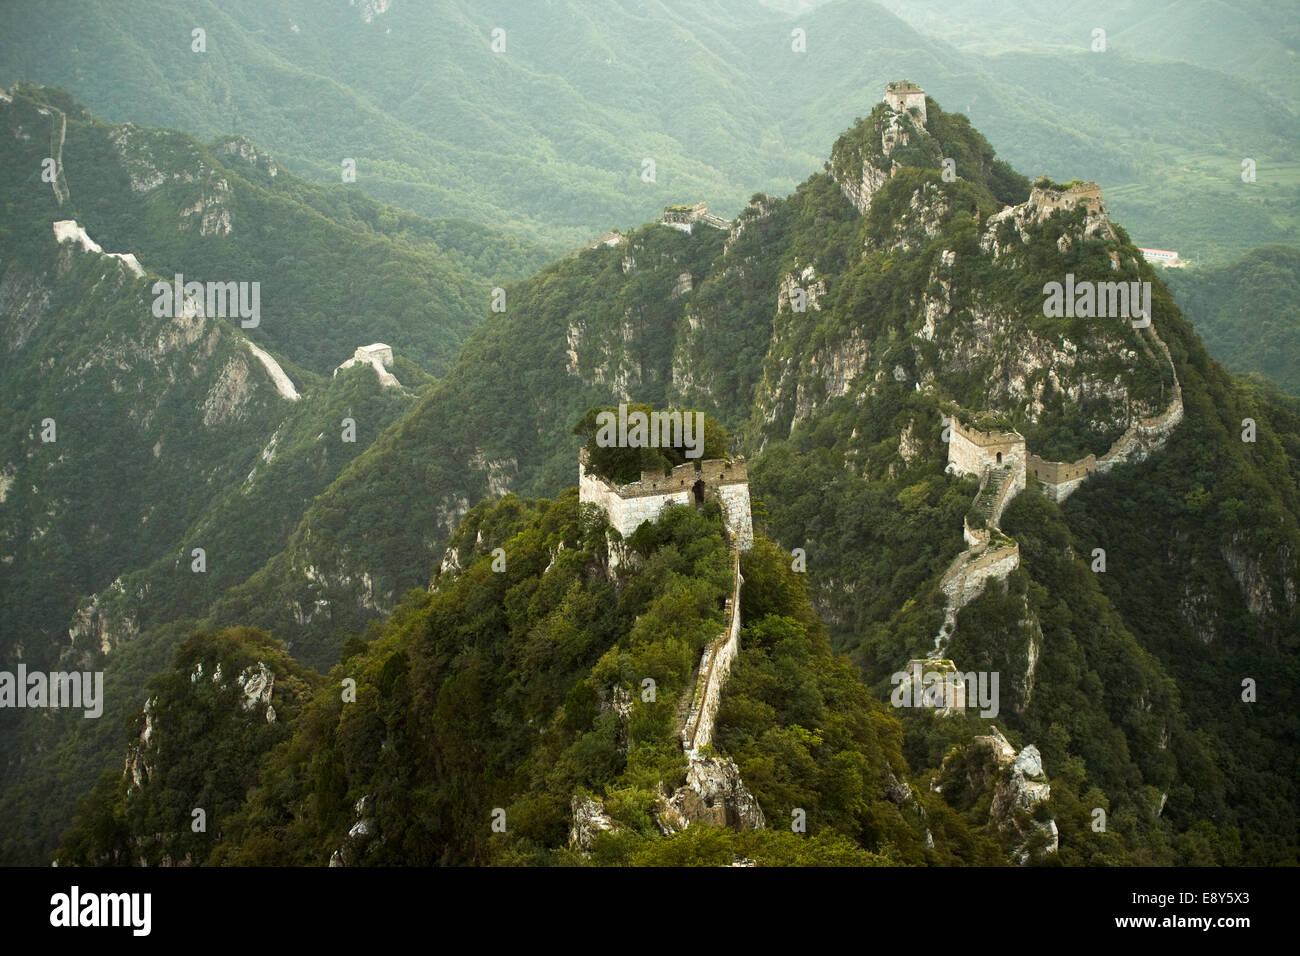 Jiankou Great Wall China Steep Mountains Stock Photo